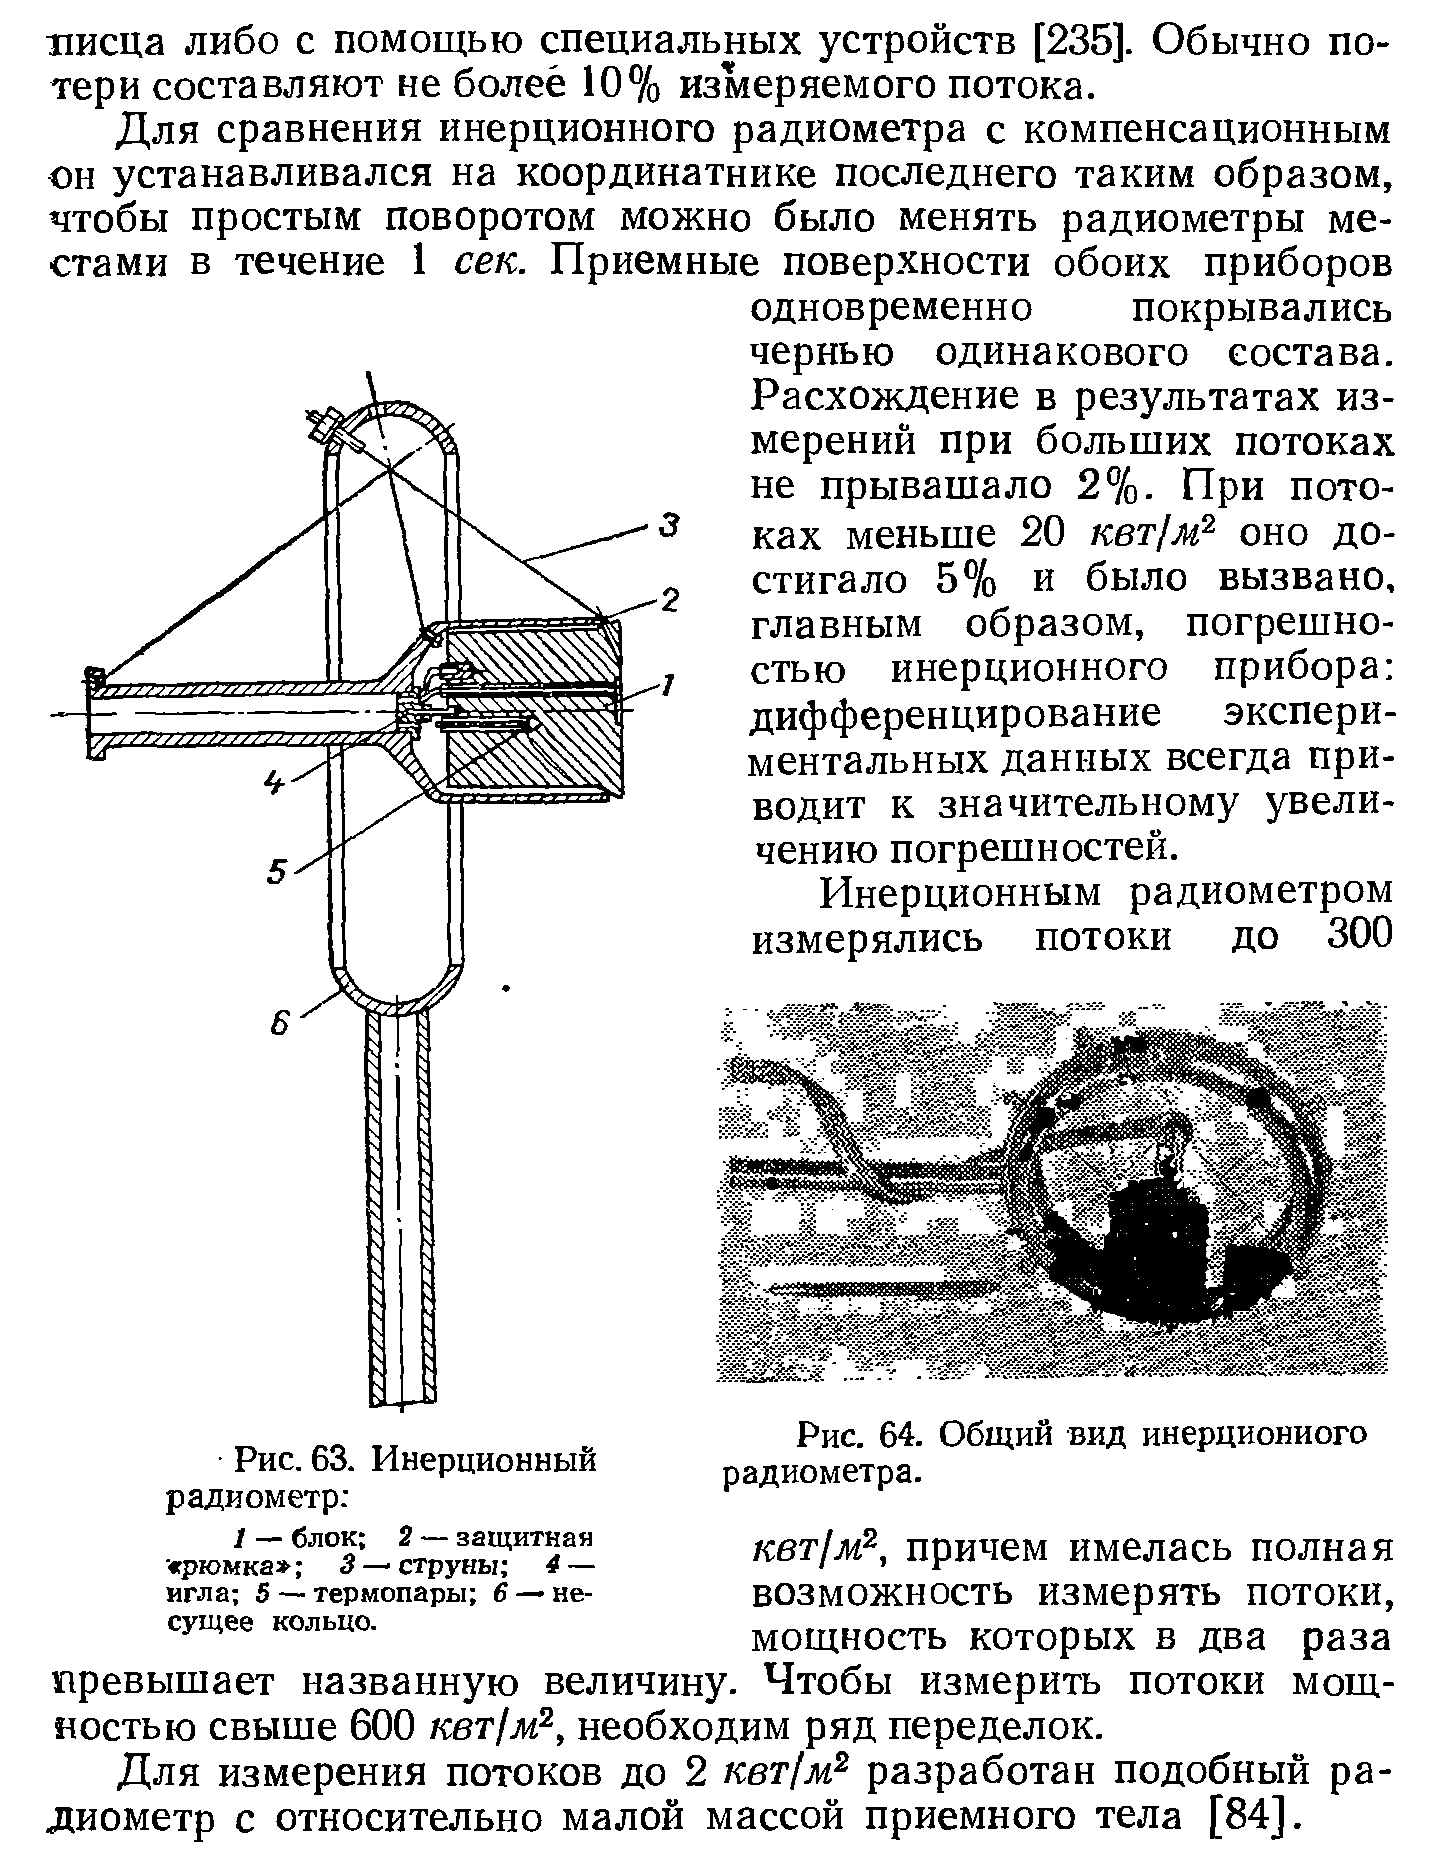 Рис. 64. Общий вид инерционного радиометра.
